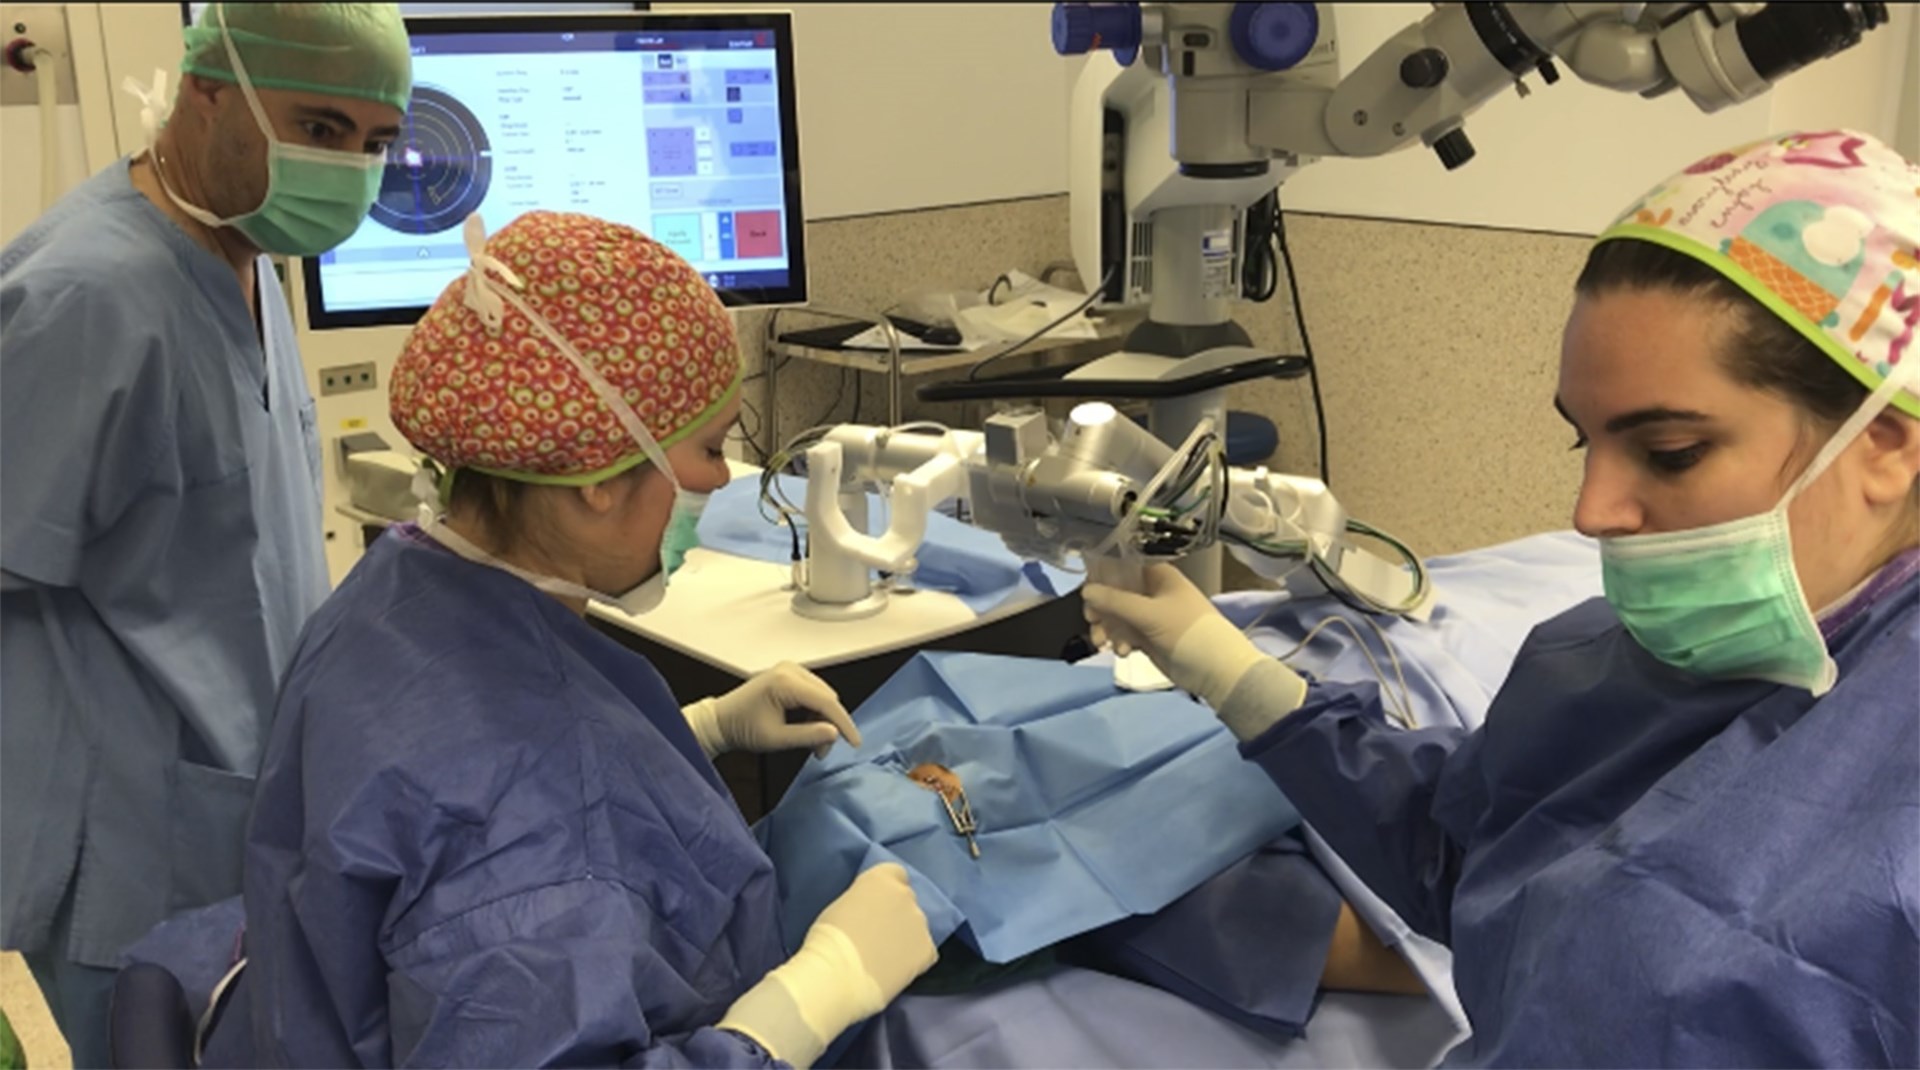 El Hospital de Manises realiza una innovadora cirugía oftalmológica que evita el trasplante de córnea